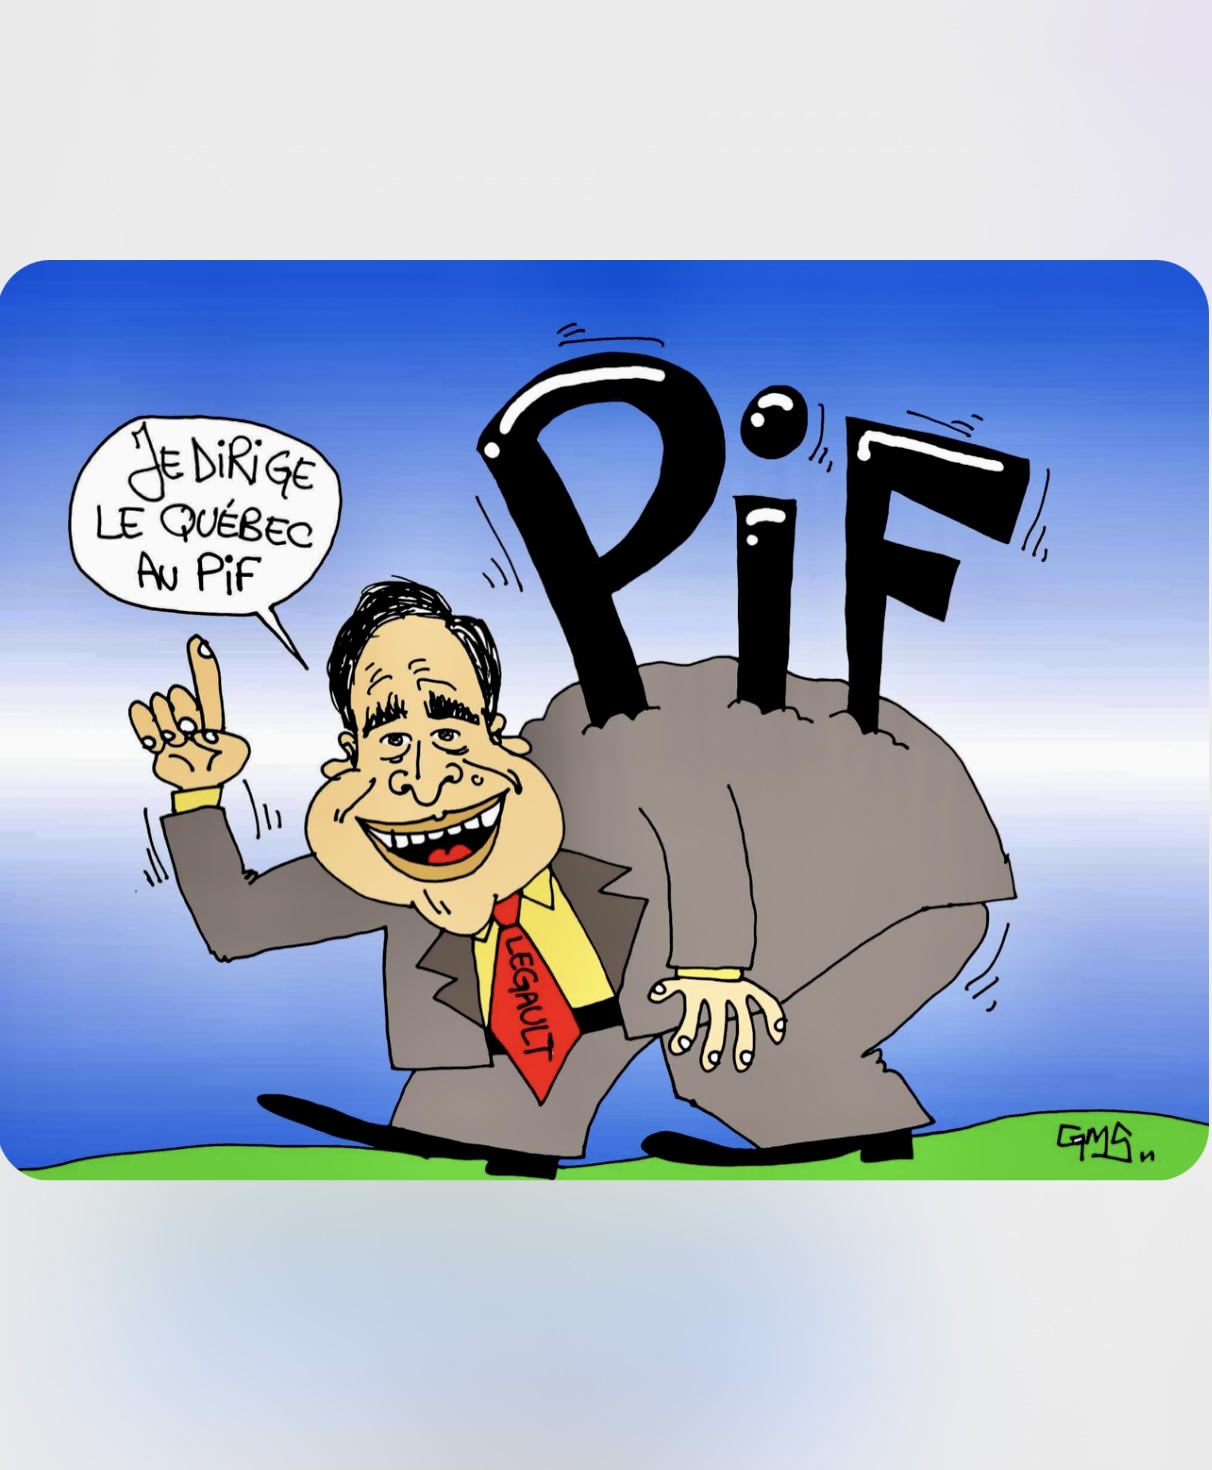 Une caricature d'un homme avec le mot pif à la manière québécoise.